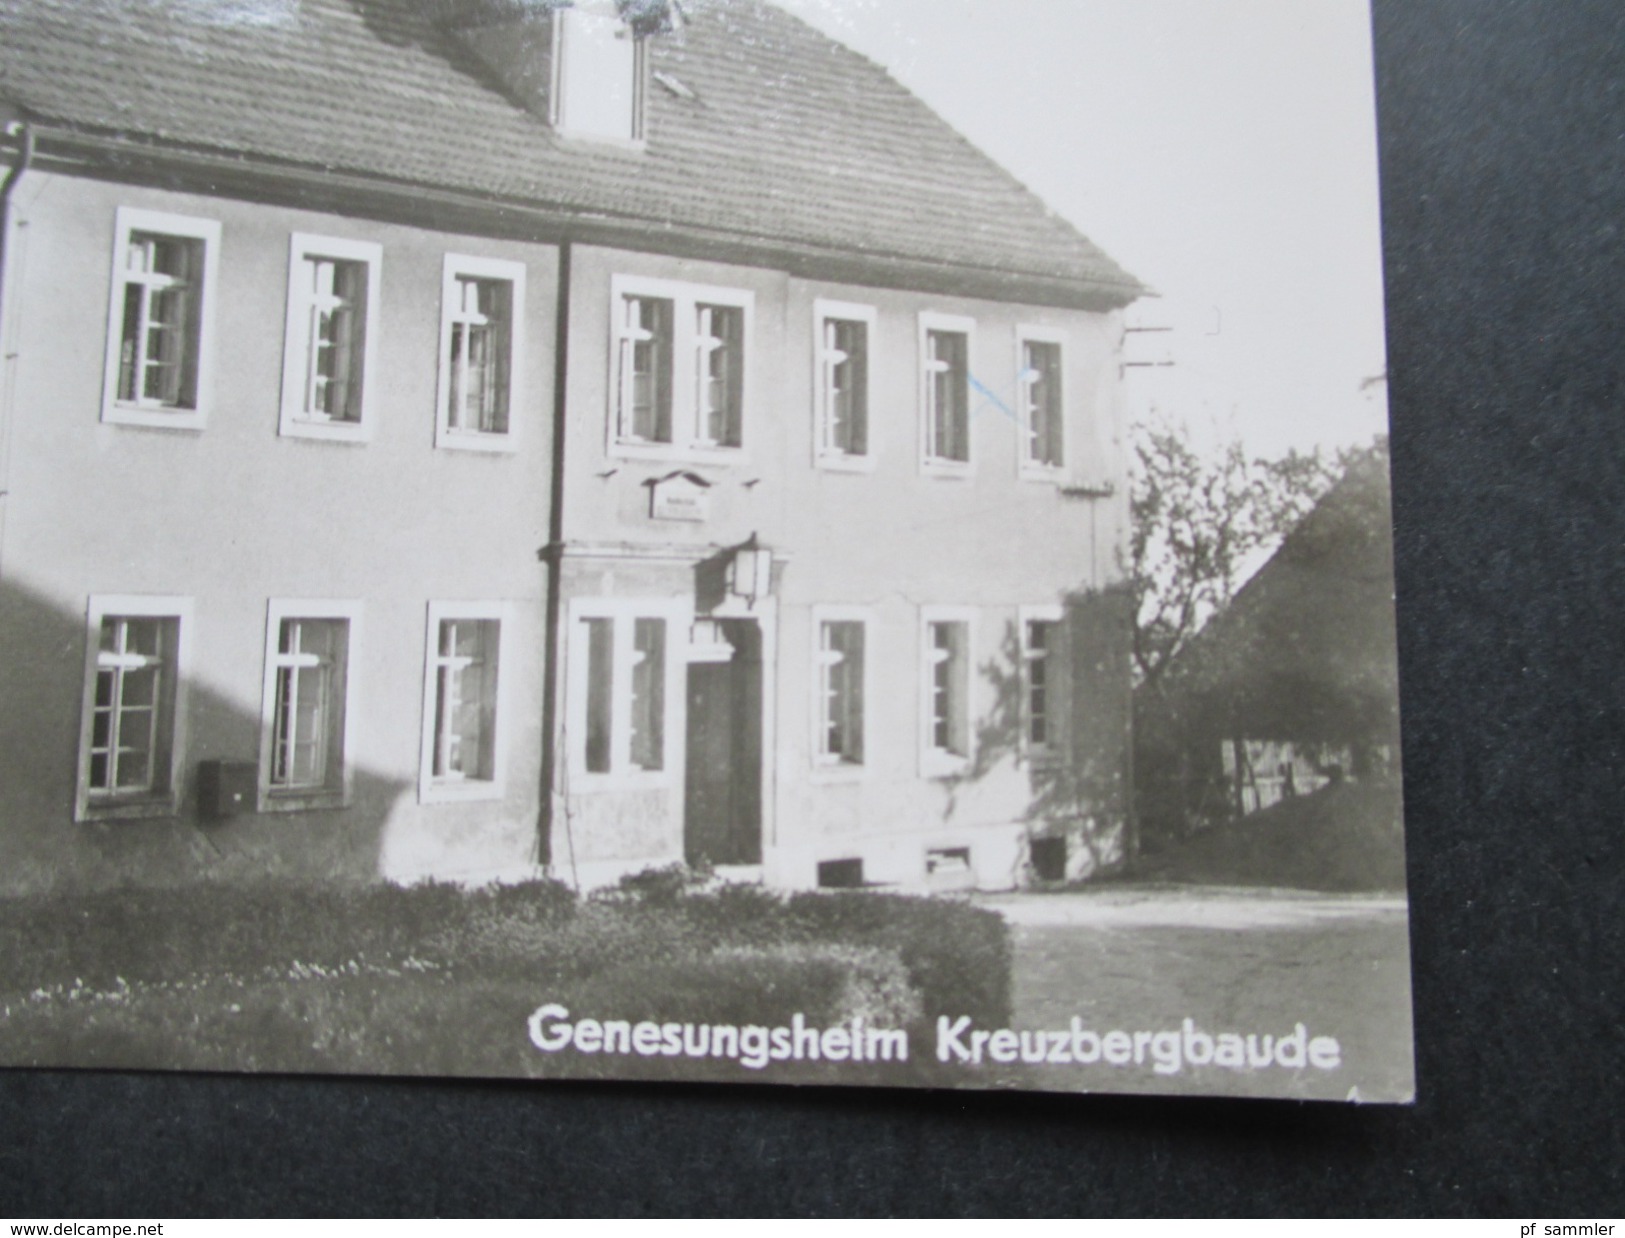 AK 1974 Echtfoto DDR Genesungsheim Kreuzbergbaude. 8901 Jauernick - Buschbach. Kreis Görlitz. - Görlitz